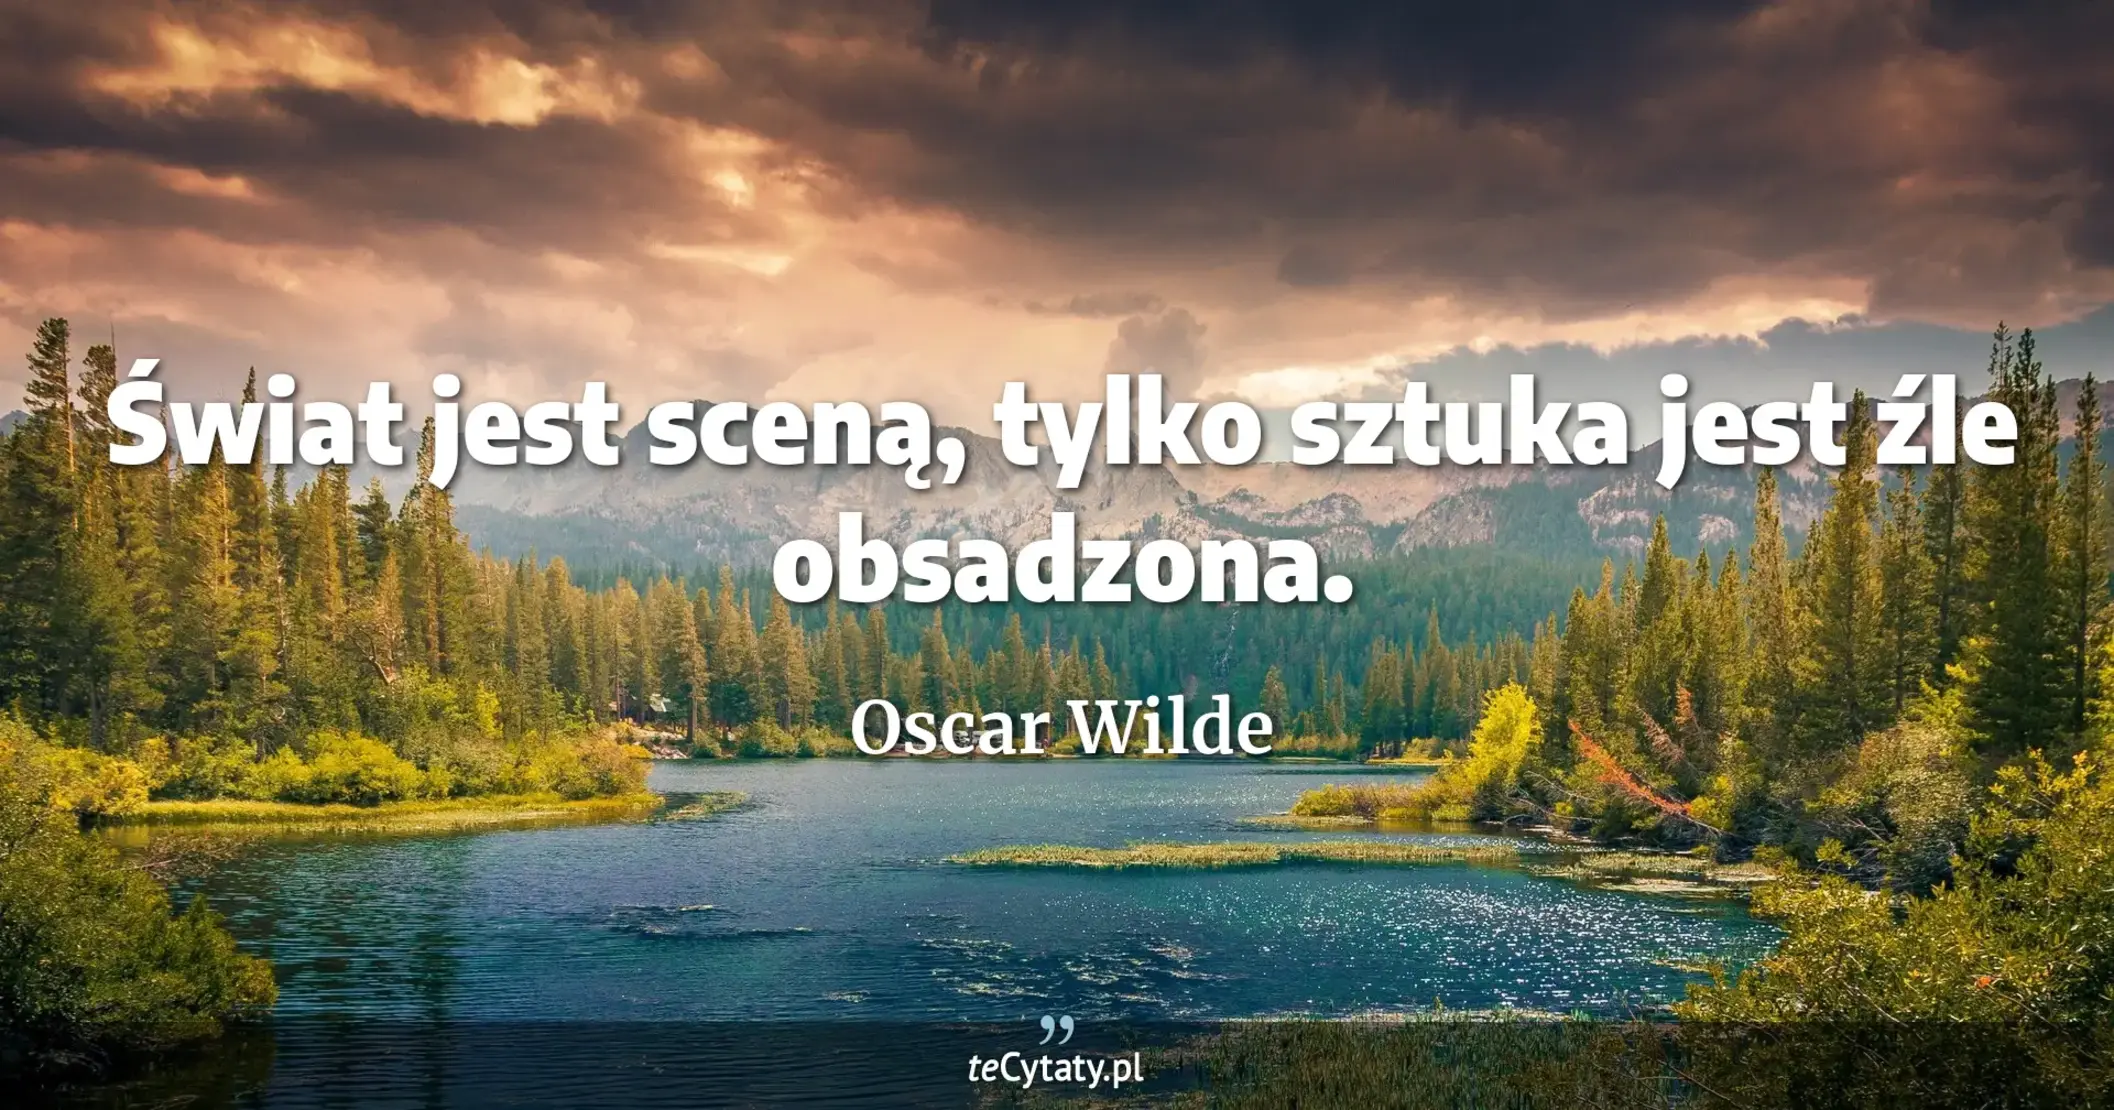 Świat jest sceną, tylko sztuka jest źle obsadzona. - Oscar Wilde